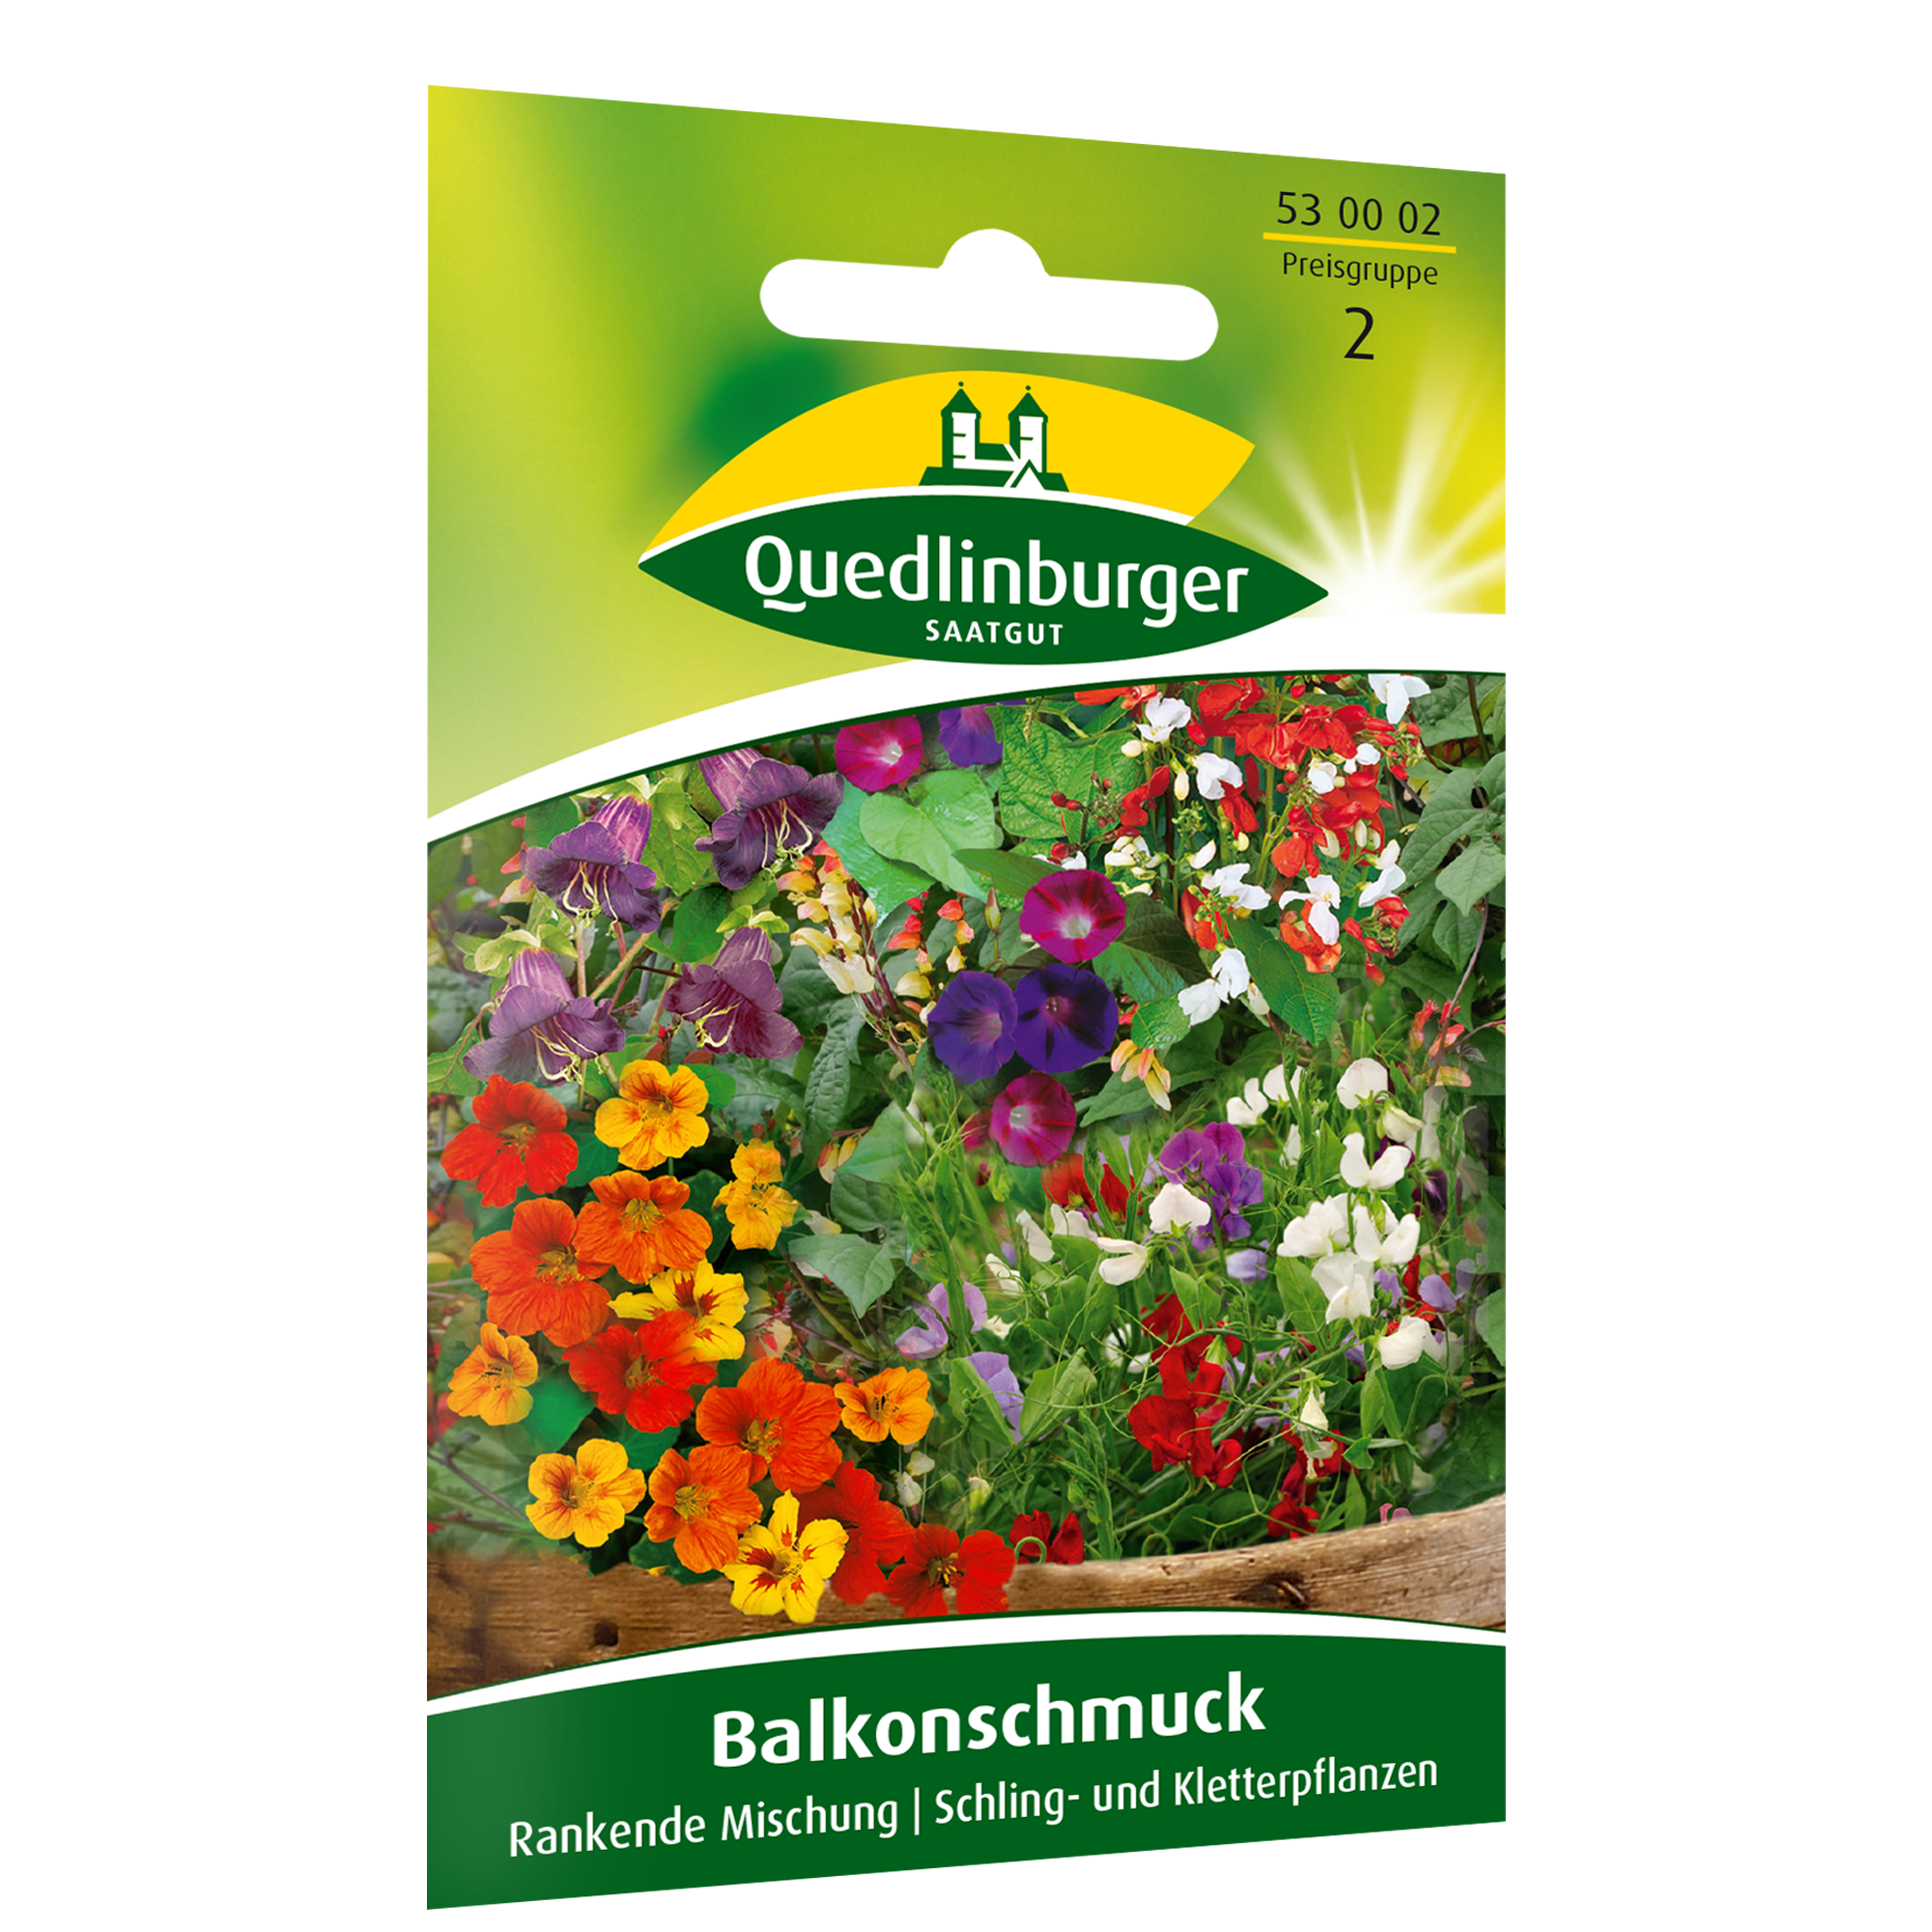 Blumenmischung 'Balkonschmuck' rankend + product picture